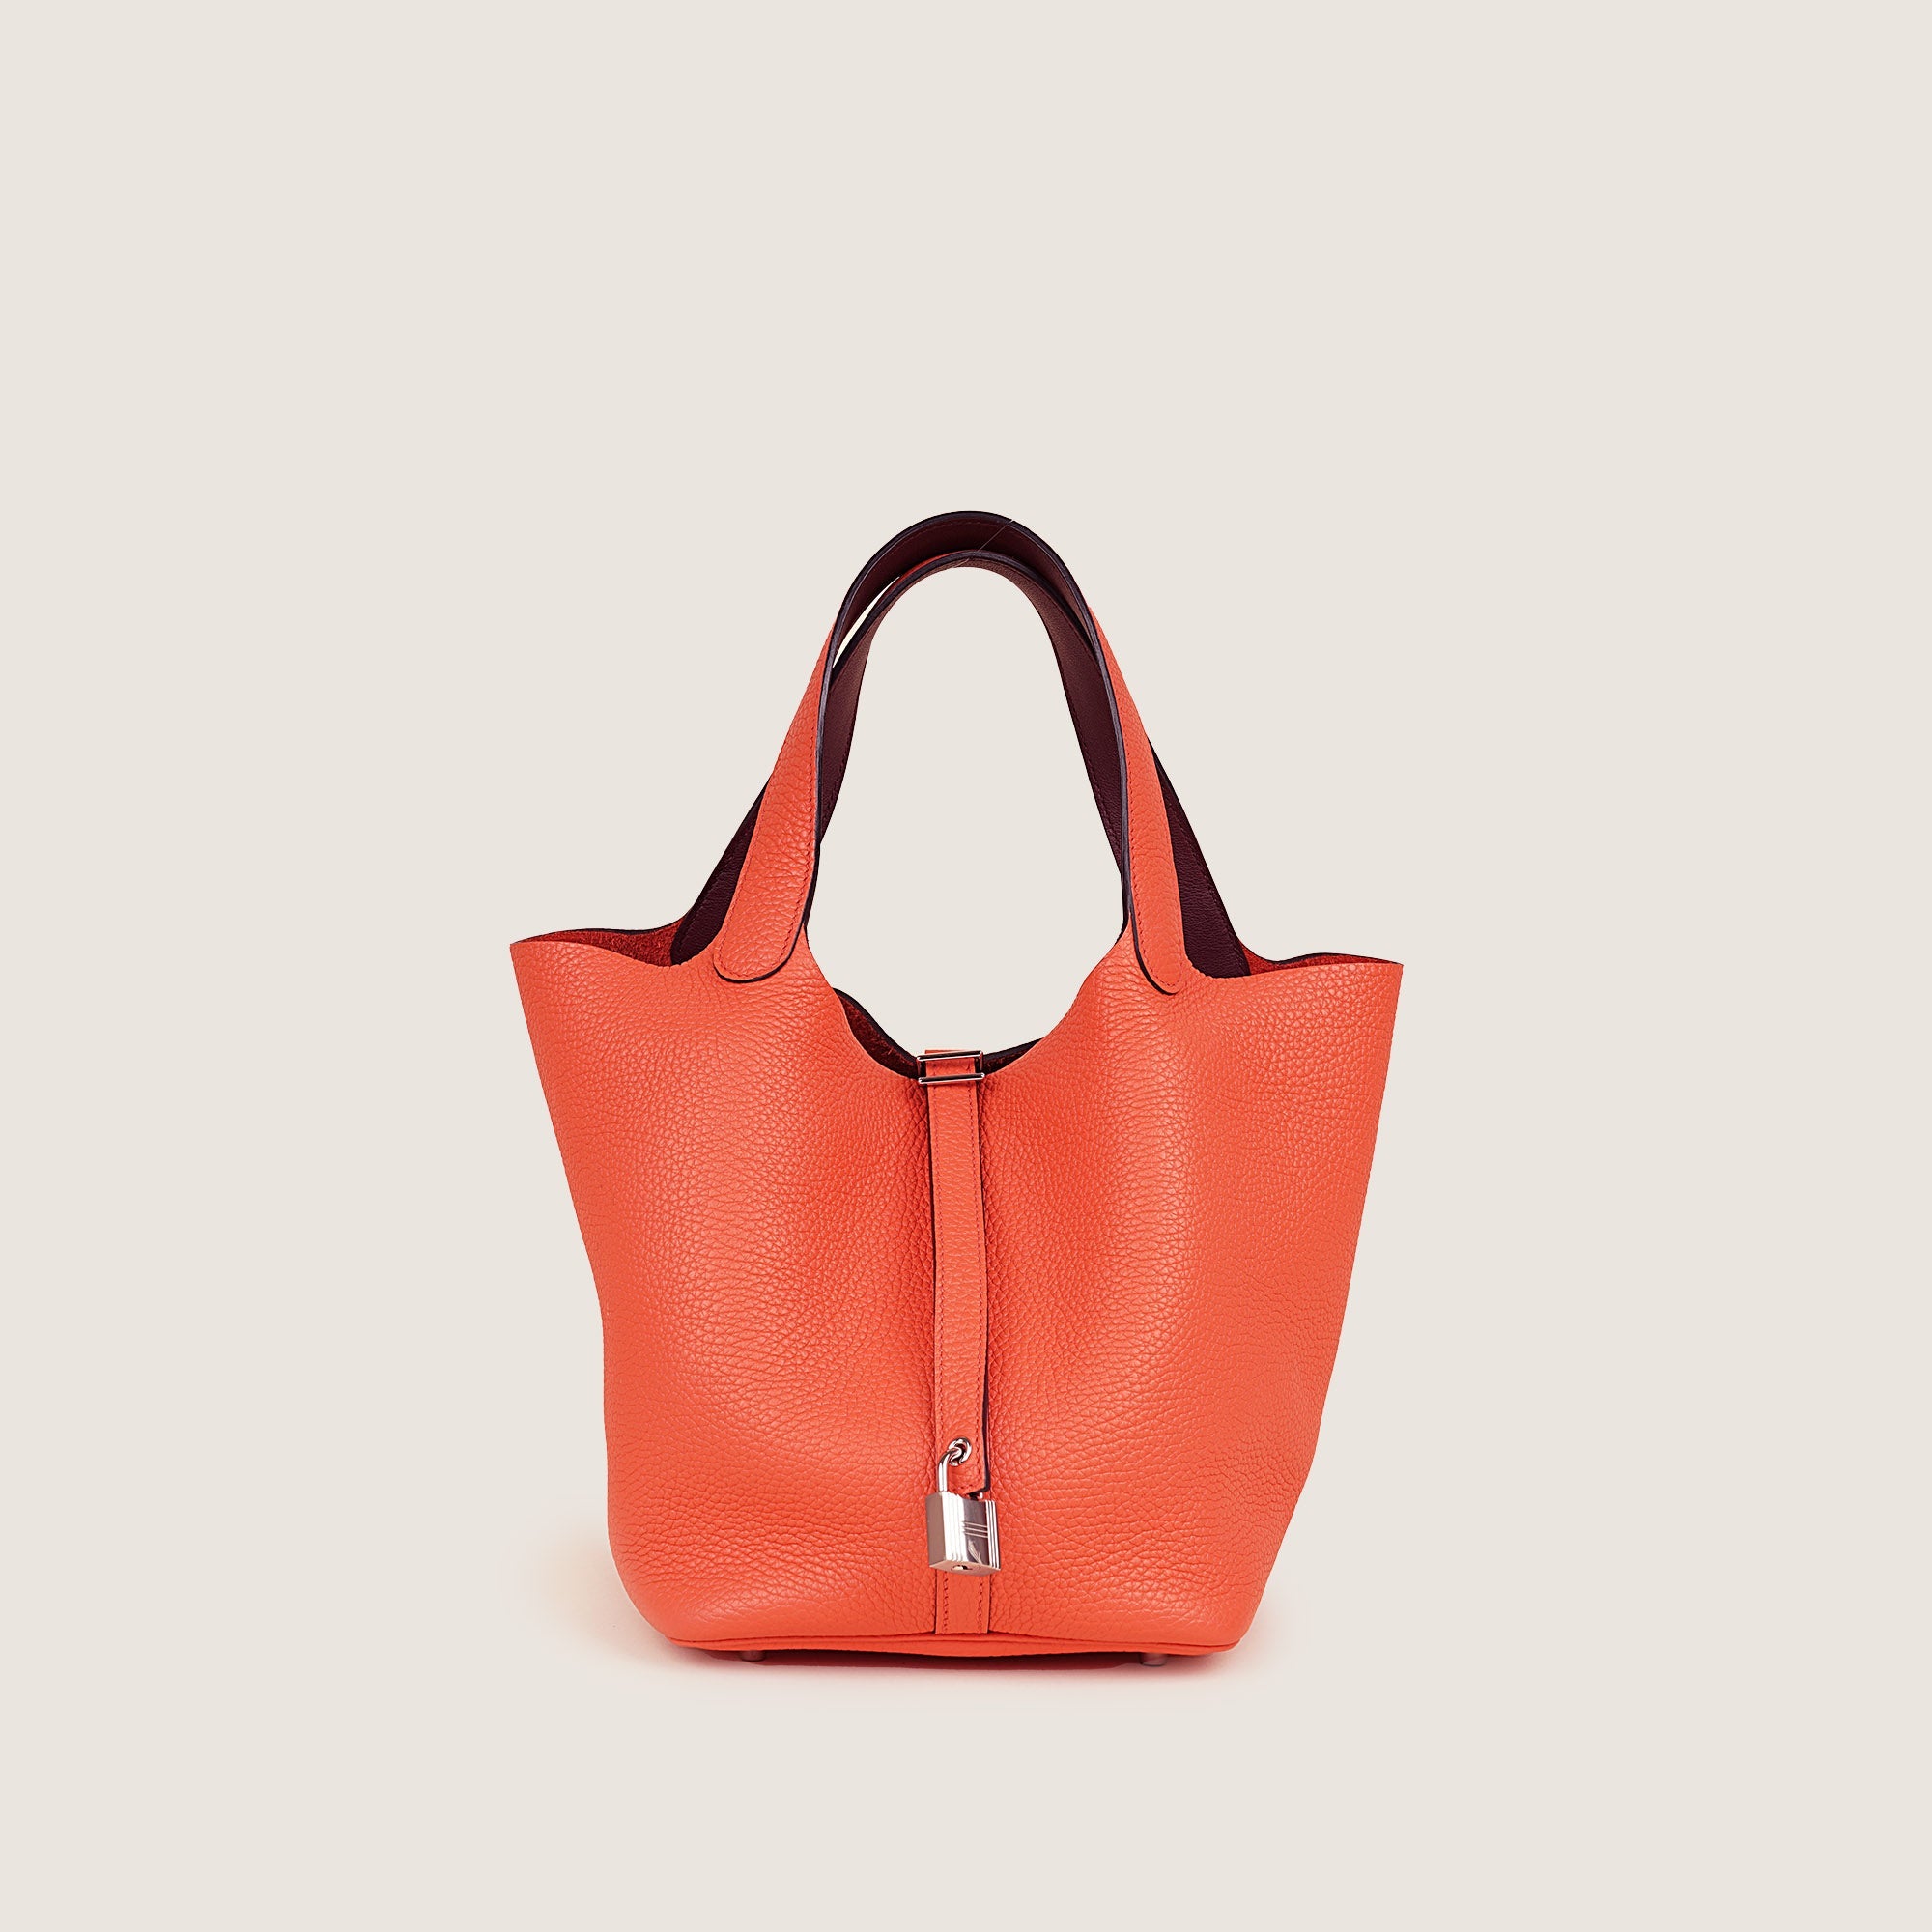 Picotin 26 Handbag - HERMÈS - Affordable Luxury